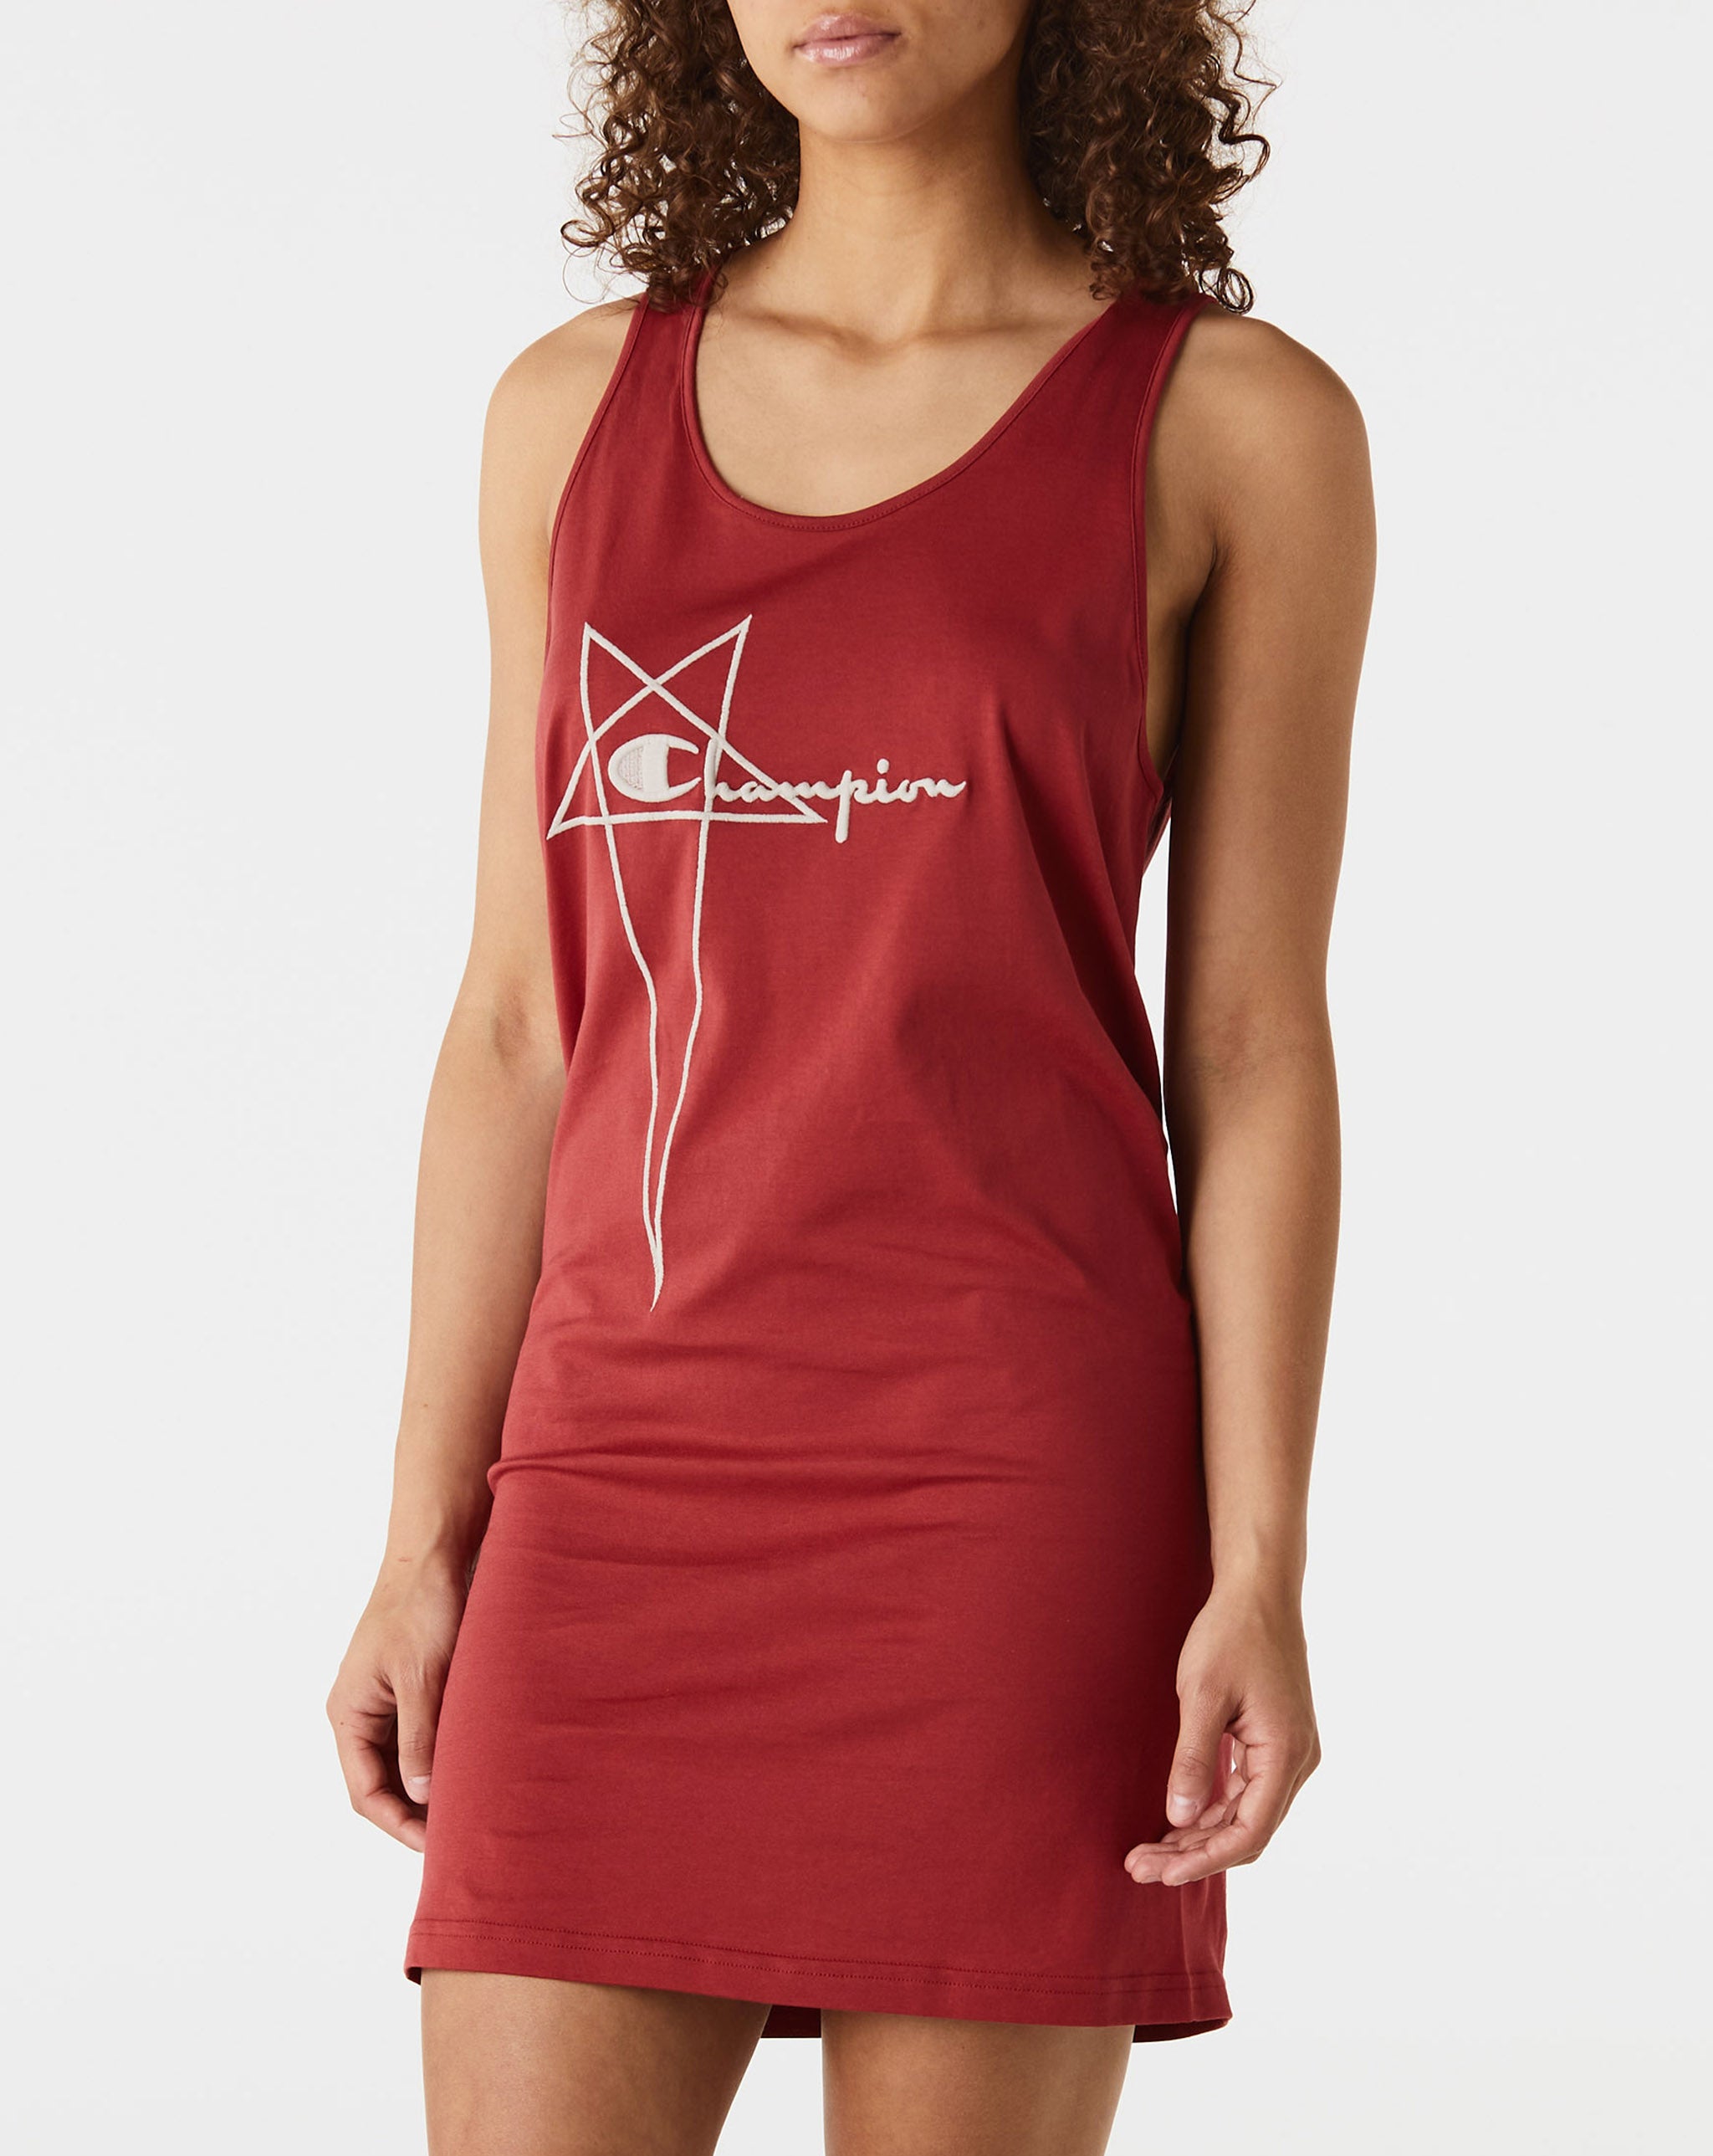 Bags & Wallets Women's Basketball Dress  - Cheap Urlfreeze Jordan outlet